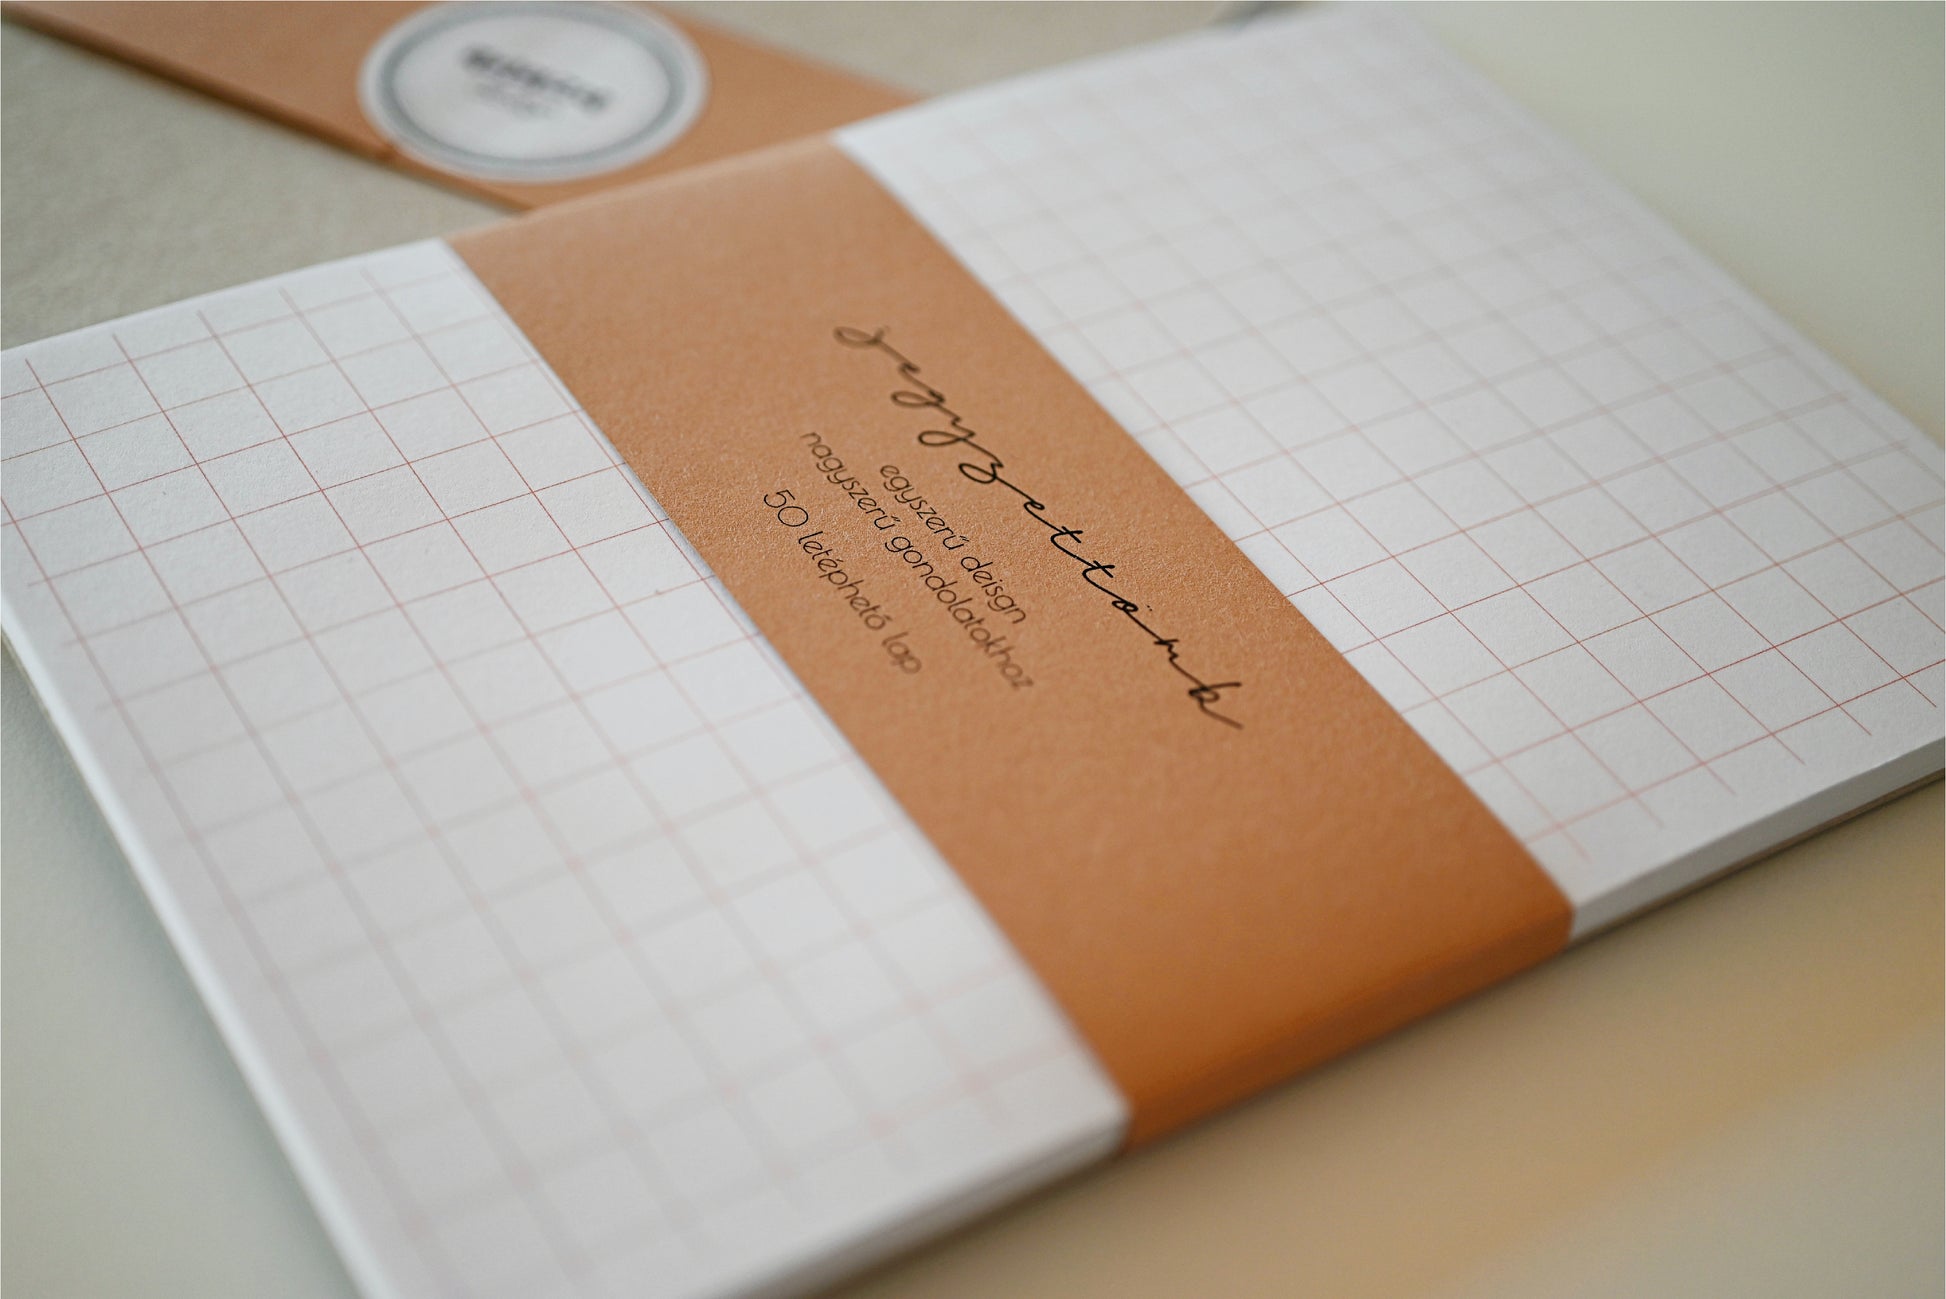 A/5-ös jegyzetfüzet, napló, kézműves, négyzetrácsos minta, fehér narancs színű, sima vagy pontrácsos kivitelben